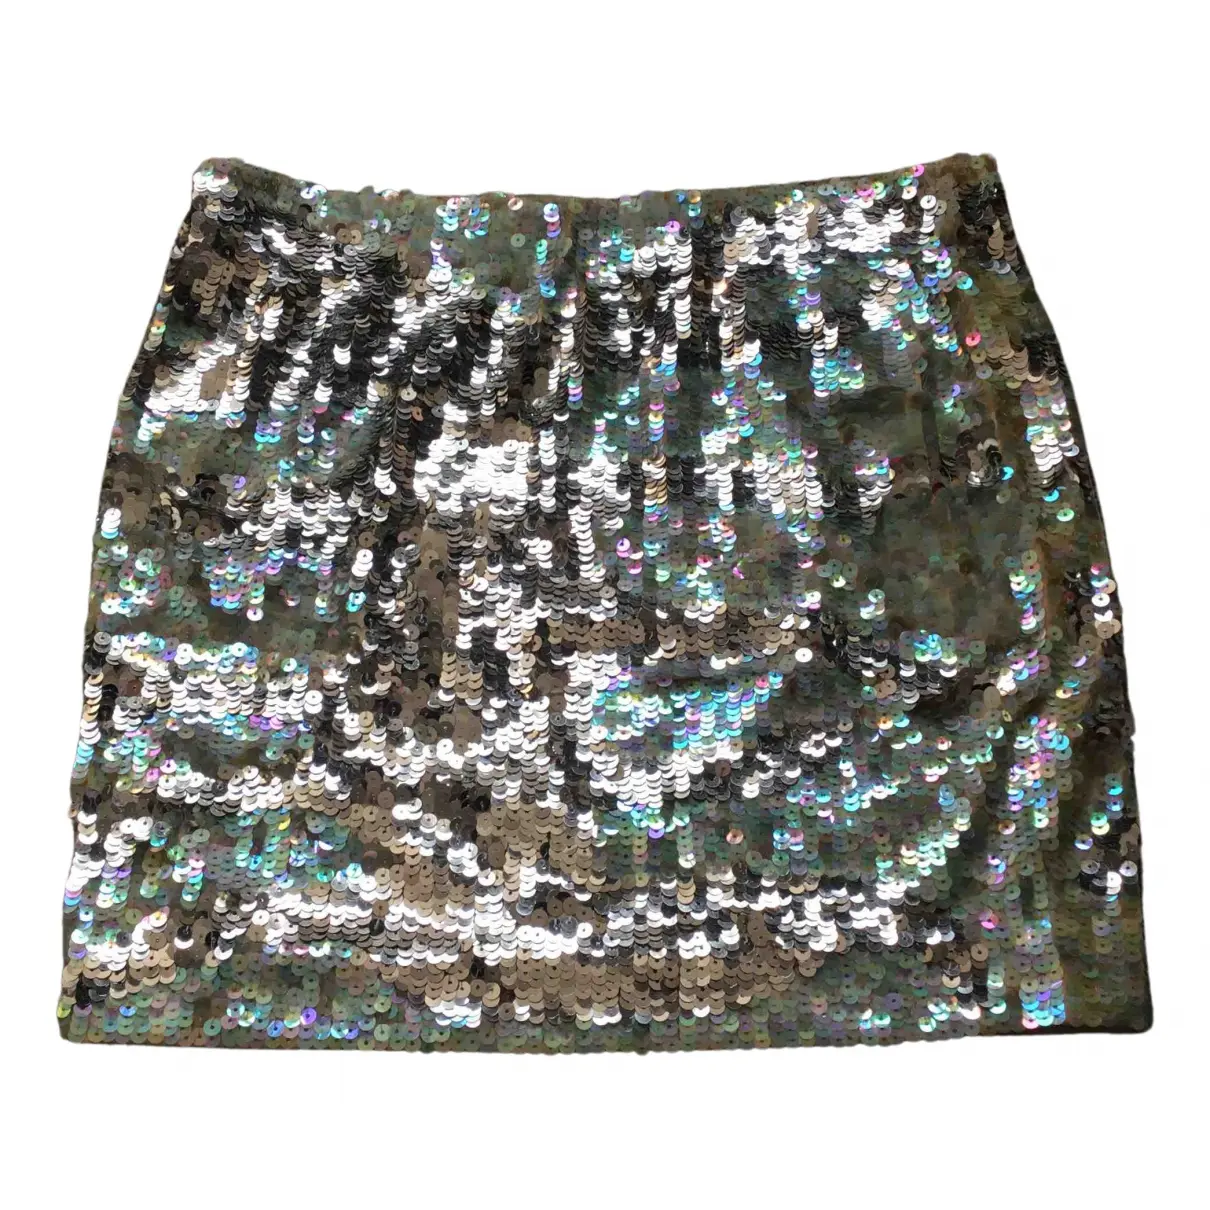 Glitter mini skirt by Malene Birger